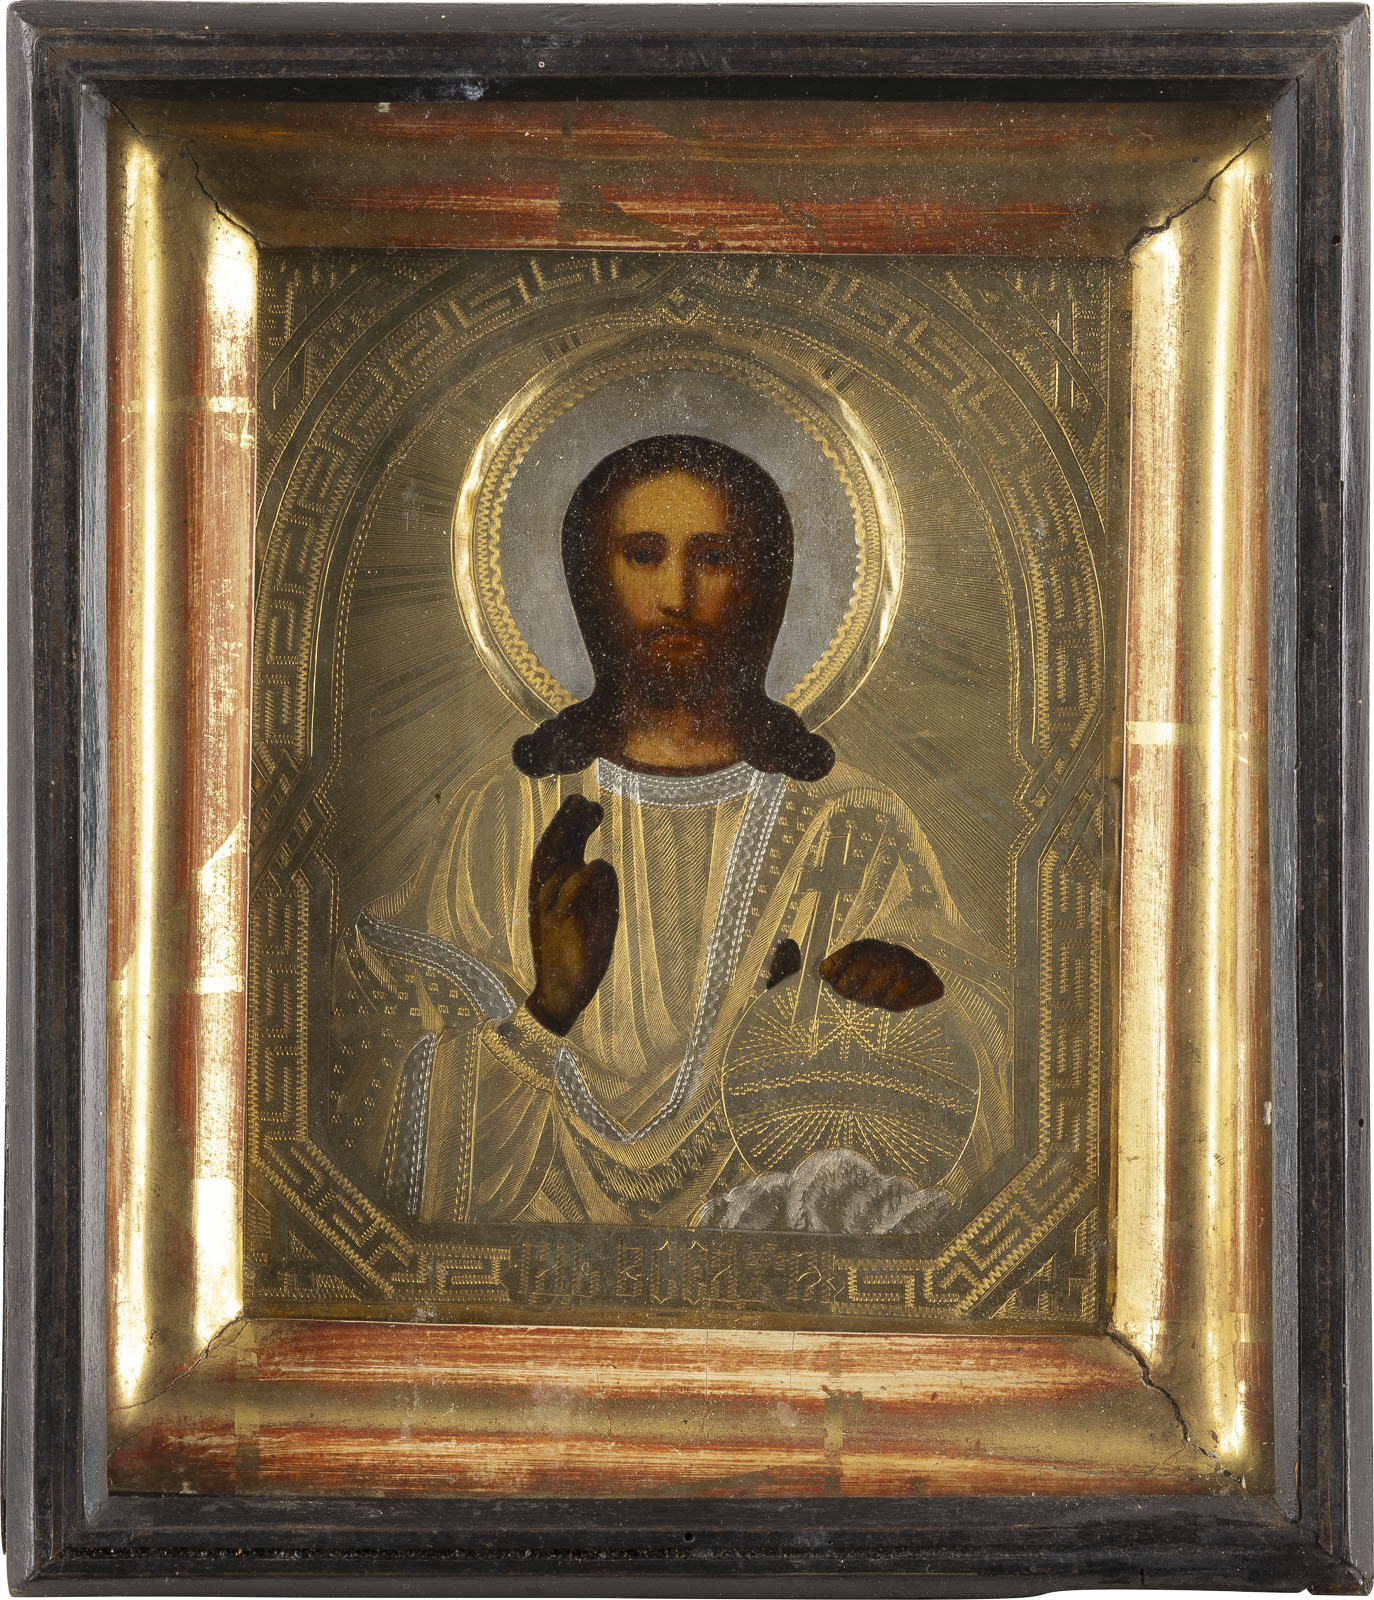 ZWEI IKONEN: CHRISTUS PANTOKRATOR MIT OKLAD IM KIOT UND JOHANNES DER KRIEGER - Image 4 of 4